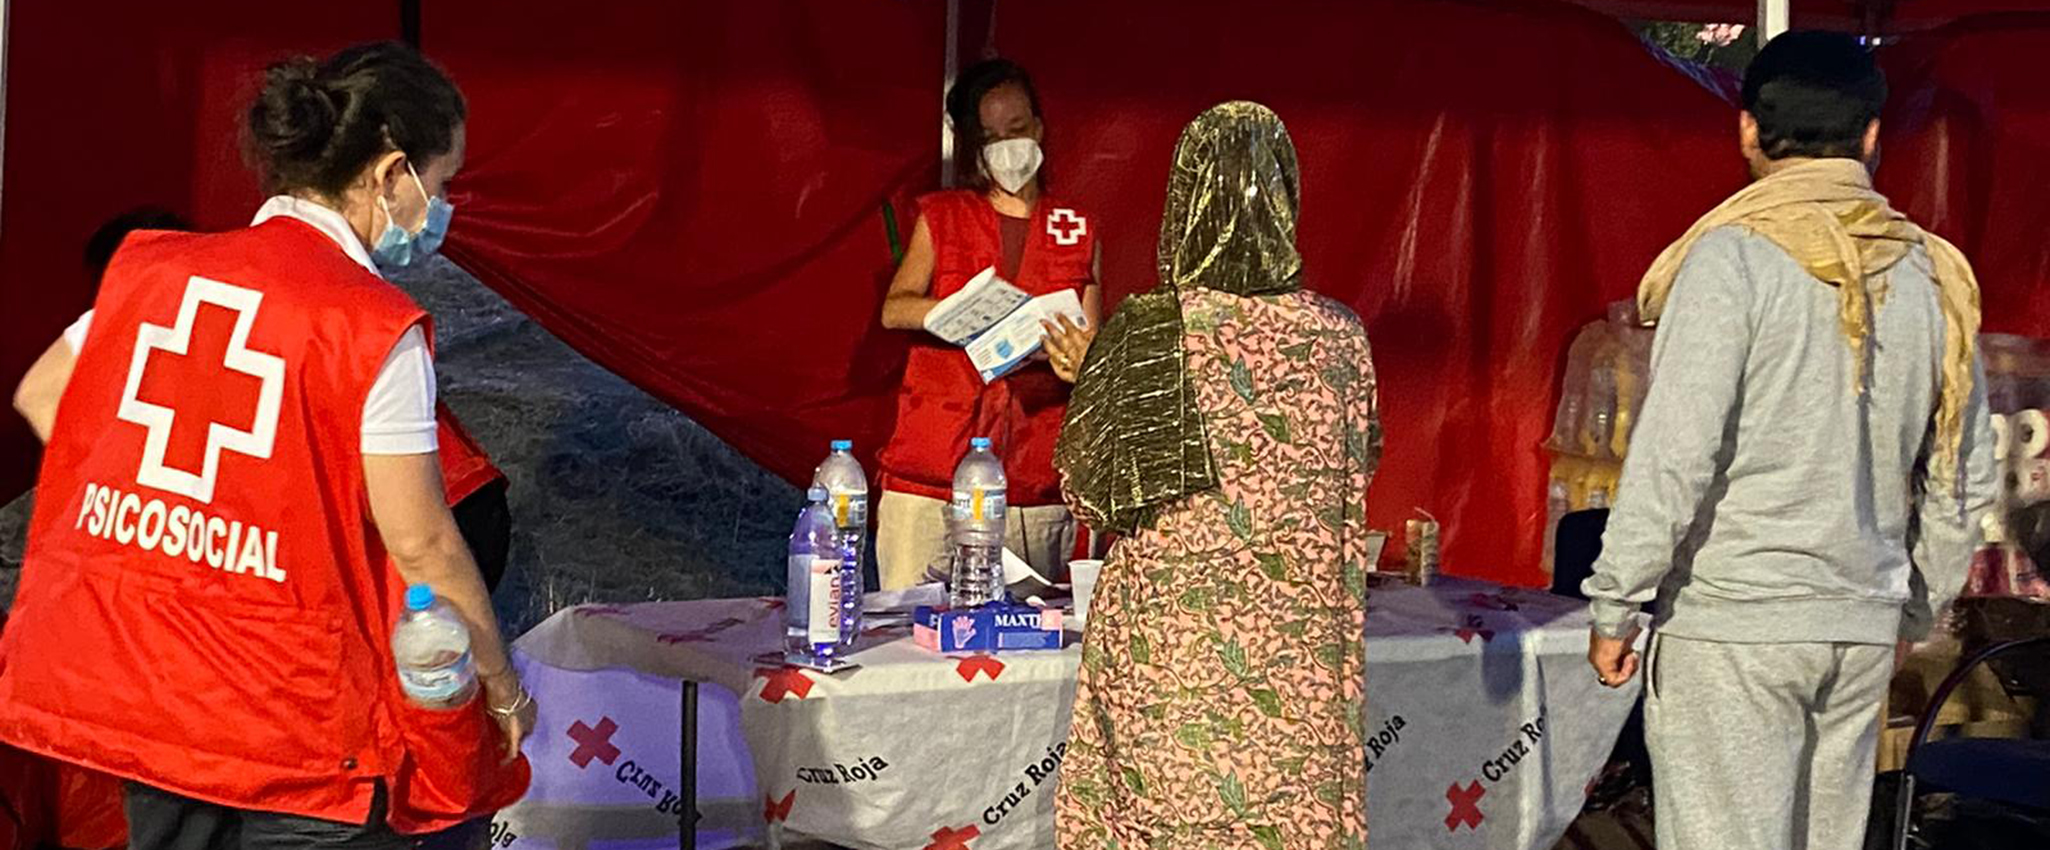 Cruz Roja despliega más de 300 personas en su operativo inicial para la primera acogida de personas refugiadas procedentes de Afganistán